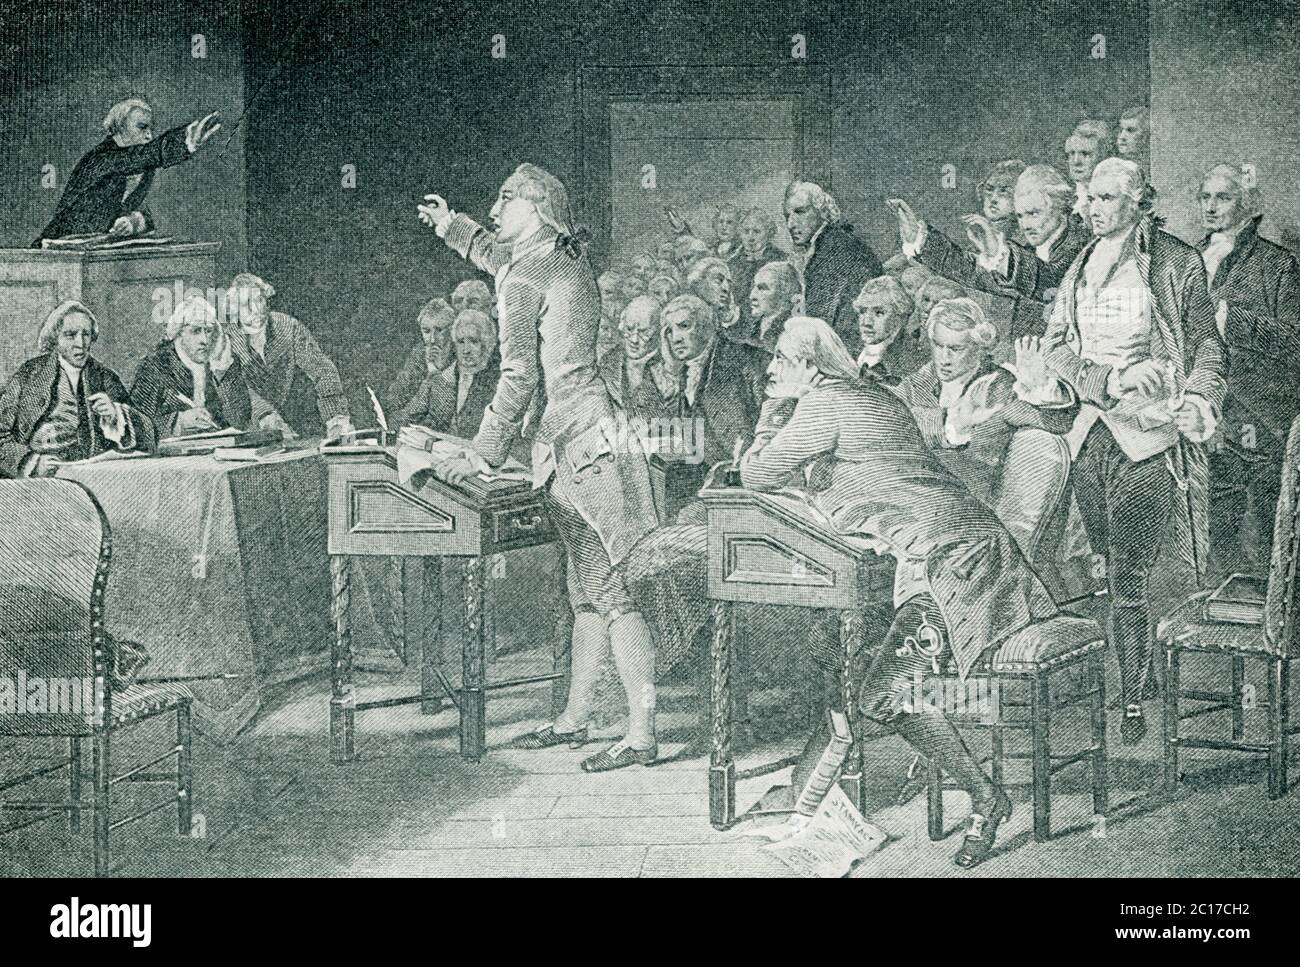 Hier in dieser Abbildung ist Patrick Henry in der Rede der Virginia Convention. Patrick Henry (1736–1799) war ein amerikanischer Patriot und Redner. Er hat durch seine Reden den kolonialen Aufstand im Süden gefördert und ist bekannt für seine Worte: "Gib mir Freiheit oder gib mir den Tod!" Stockfoto